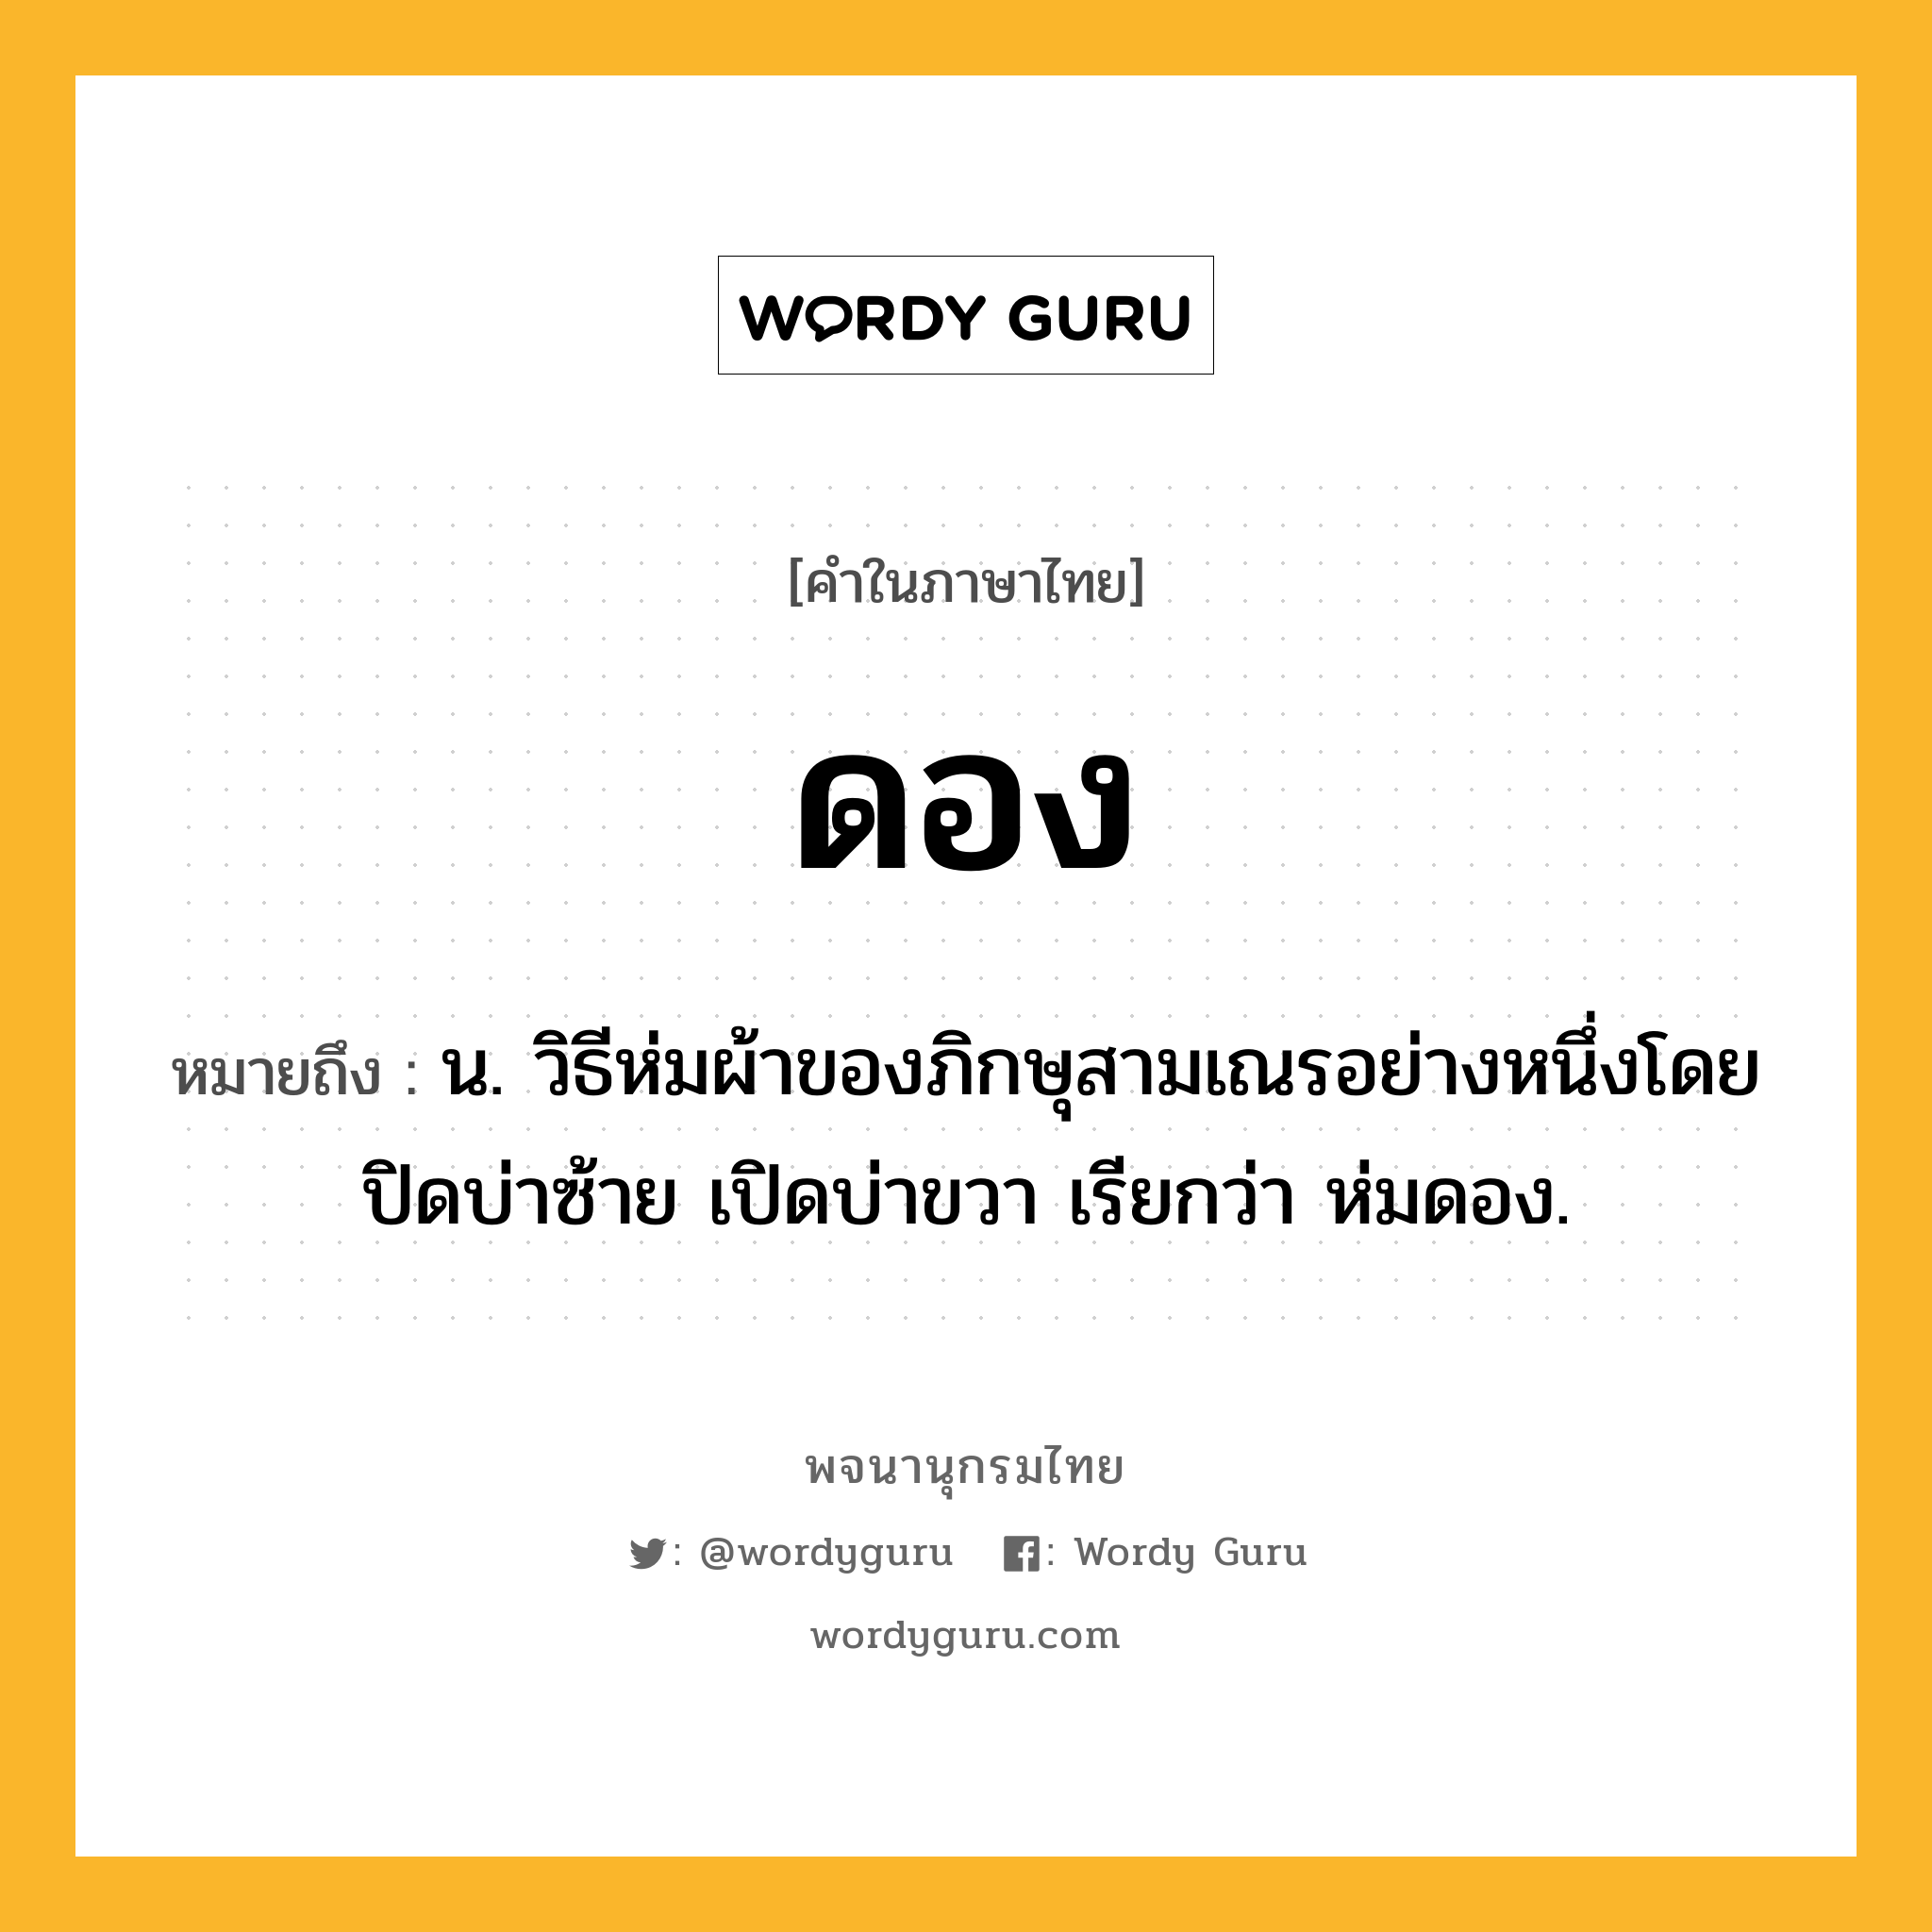 ดอง ความหมาย หมายถึงอะไร?, คำในภาษาไทย ดอง หมายถึง น. วิธีห่มผ้าของภิกษุสามเณรอย่างหนึ่งโดยปิดบ่าซ้าย เปิดบ่าขวา เรียกว่า ห่มดอง.